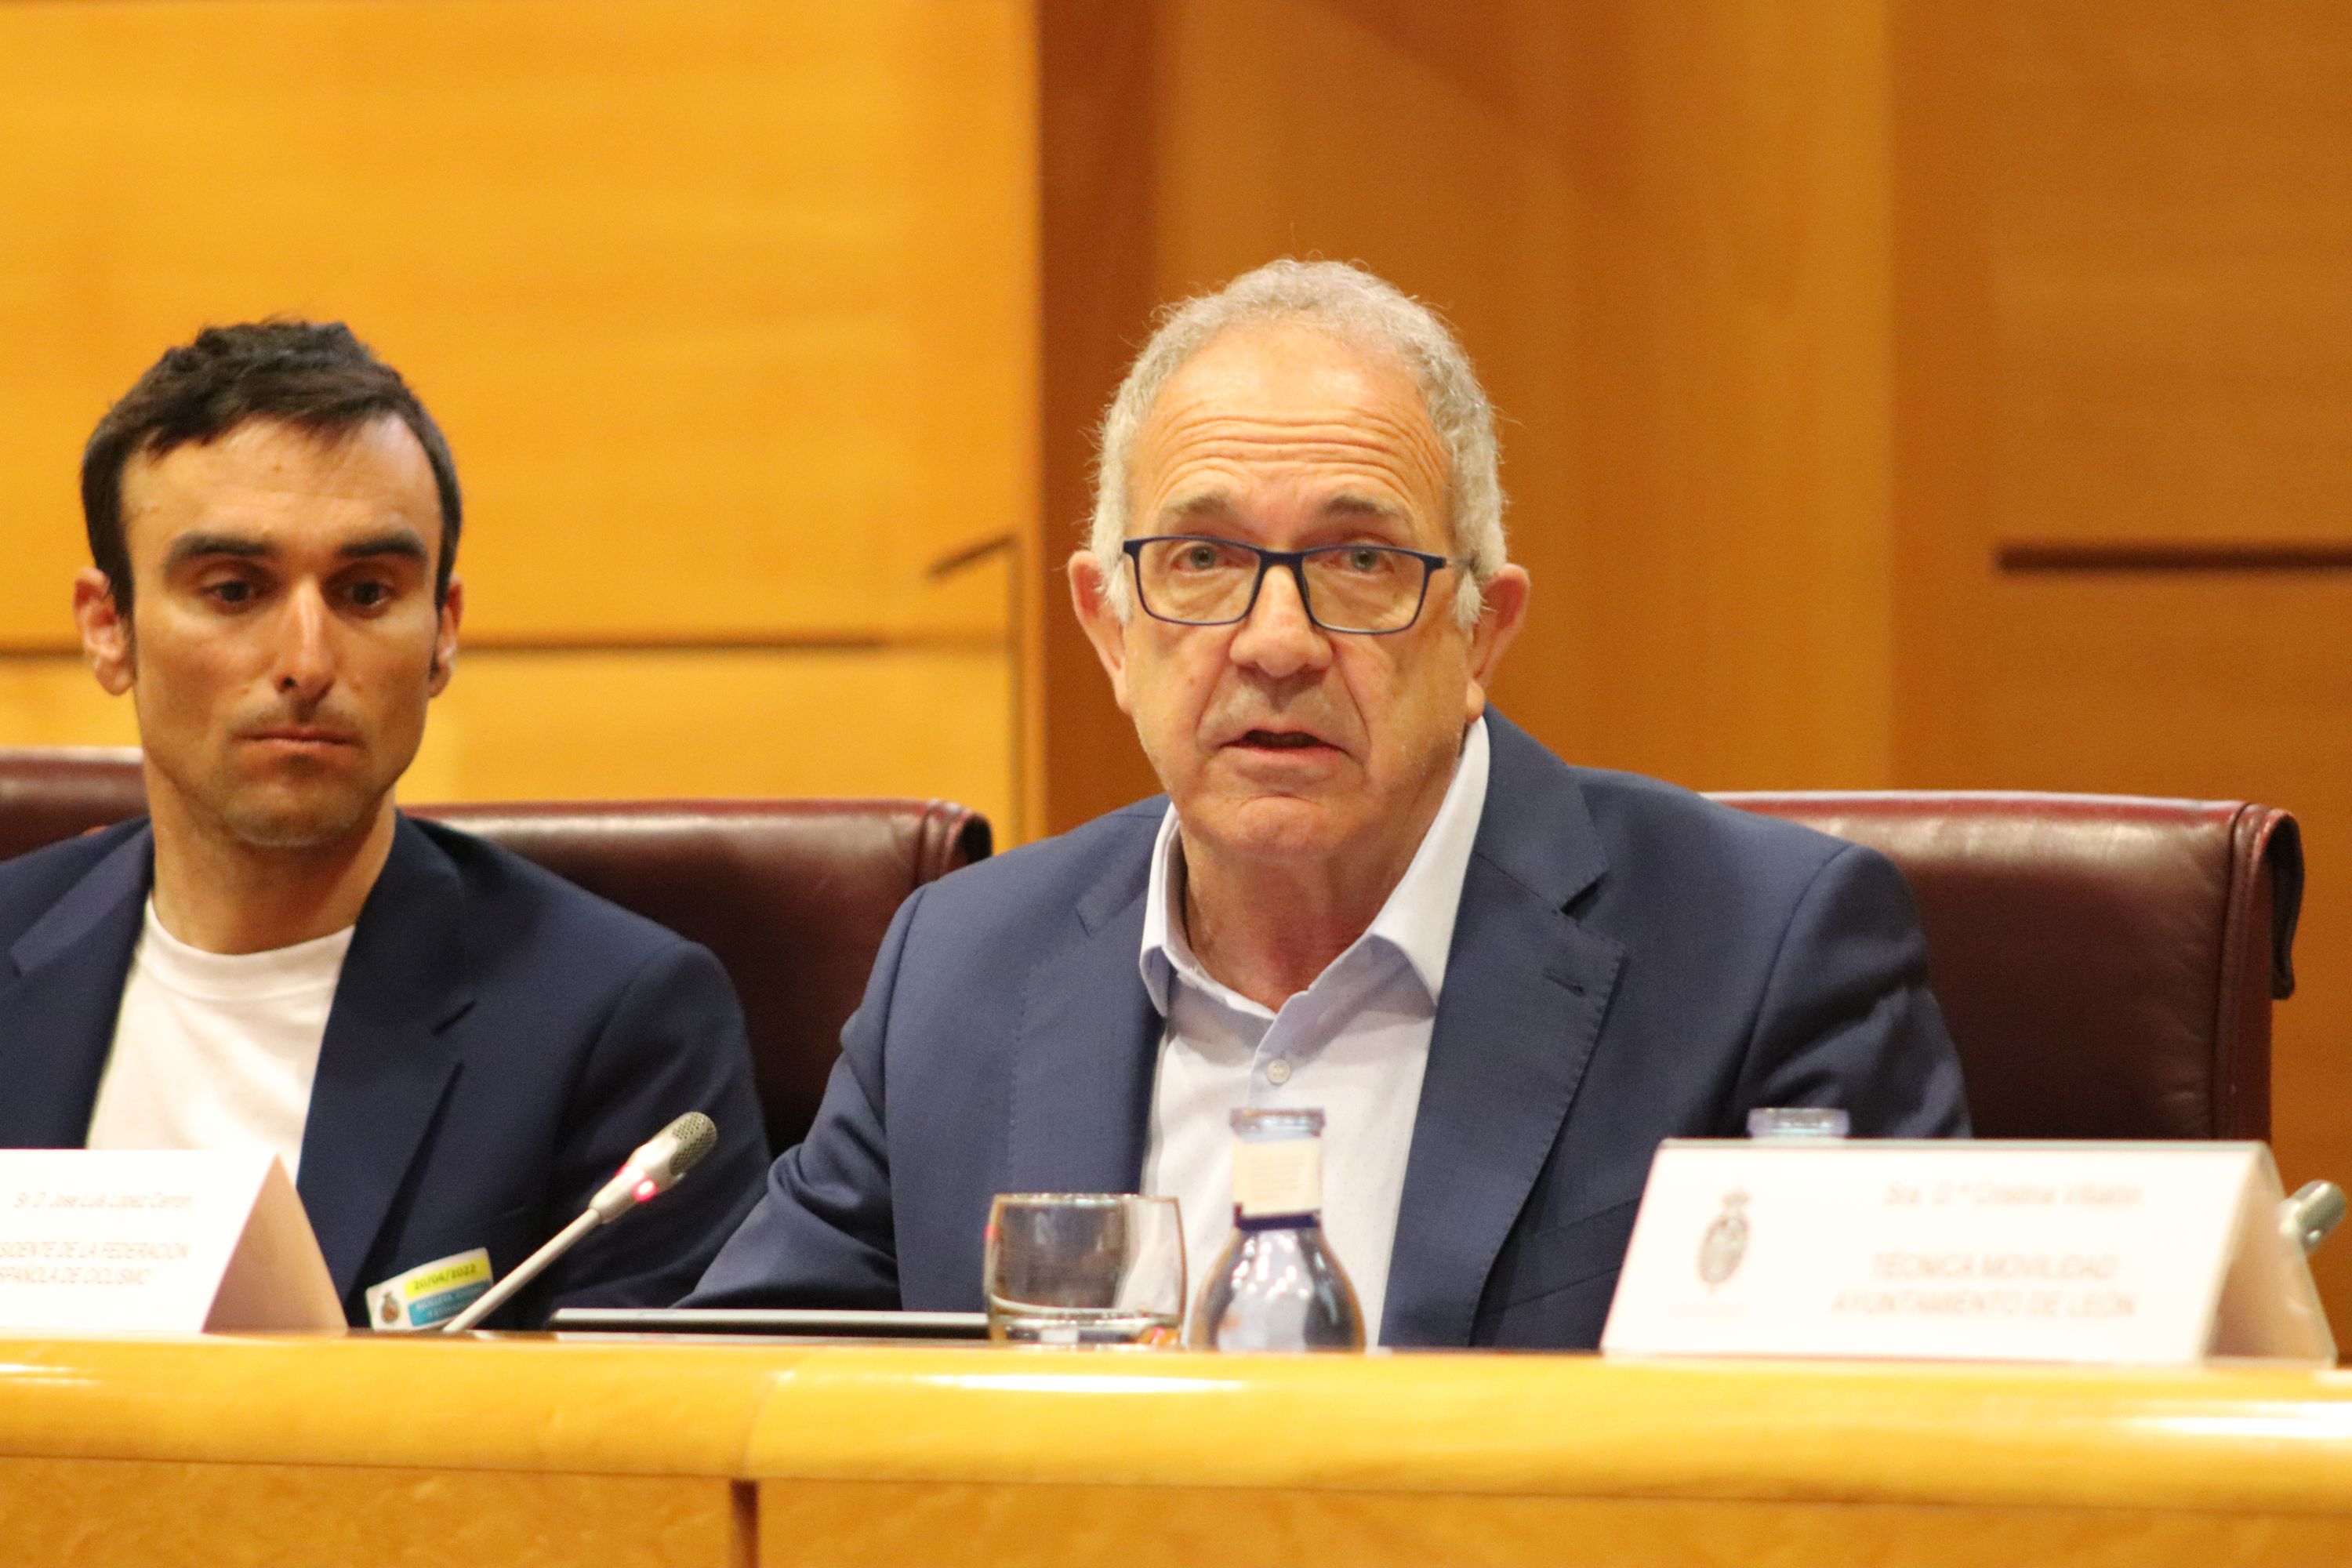 José Luis López Cerrón interviene en el Senado en las jornadas de Bicicleta, Ciudad y Estrategia